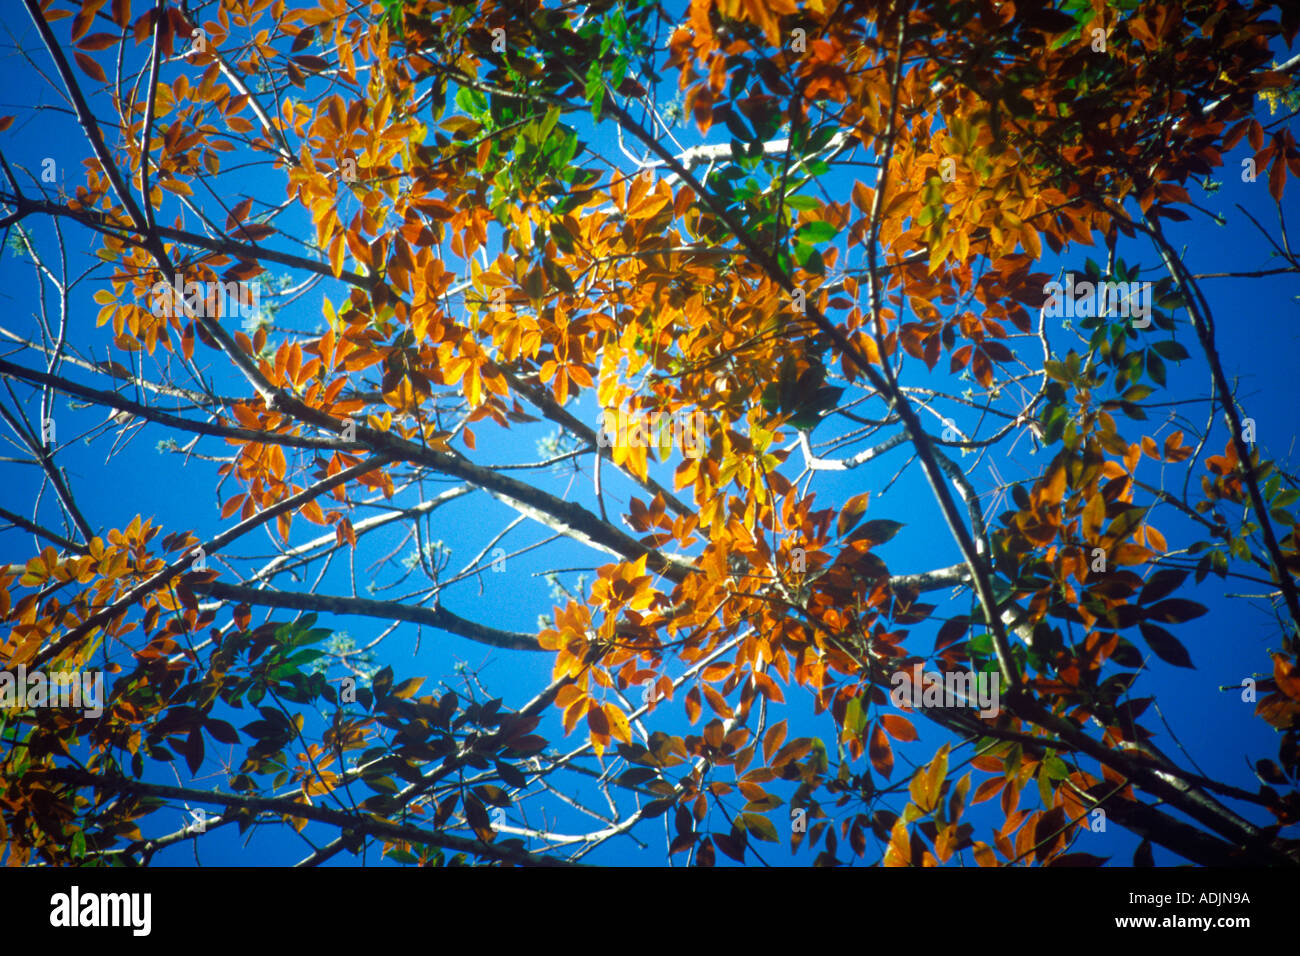 RHS70903 vert chaud et les feuilles des arbres en caoutchouc contre le ciel bleu Pala Inde Kerala district Banque D'Images